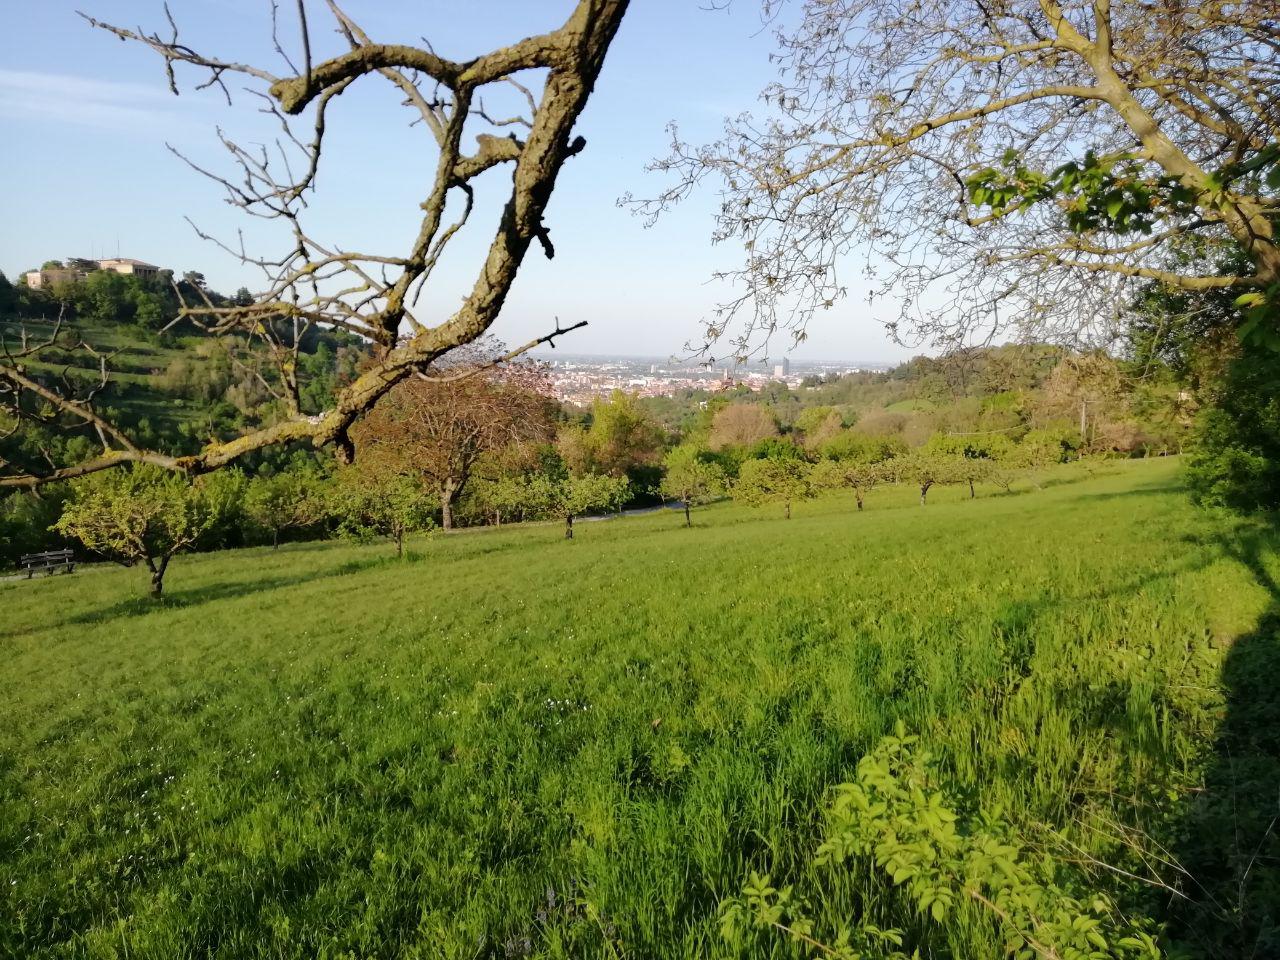 View from Villa Ghigi